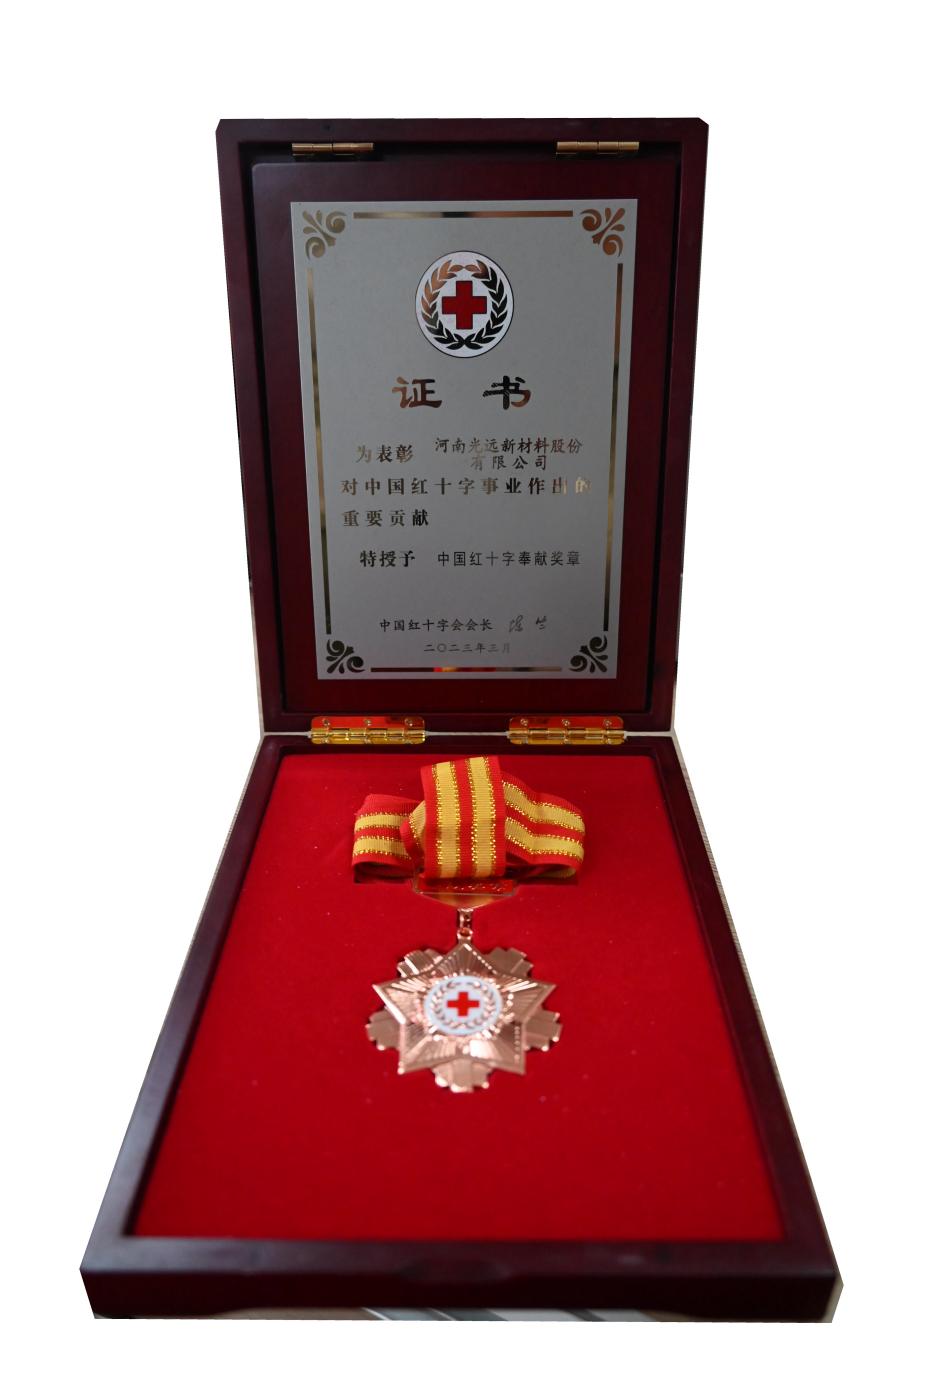 澳门人巴黎人6123网站荣获“中国红十字奉献奖章”